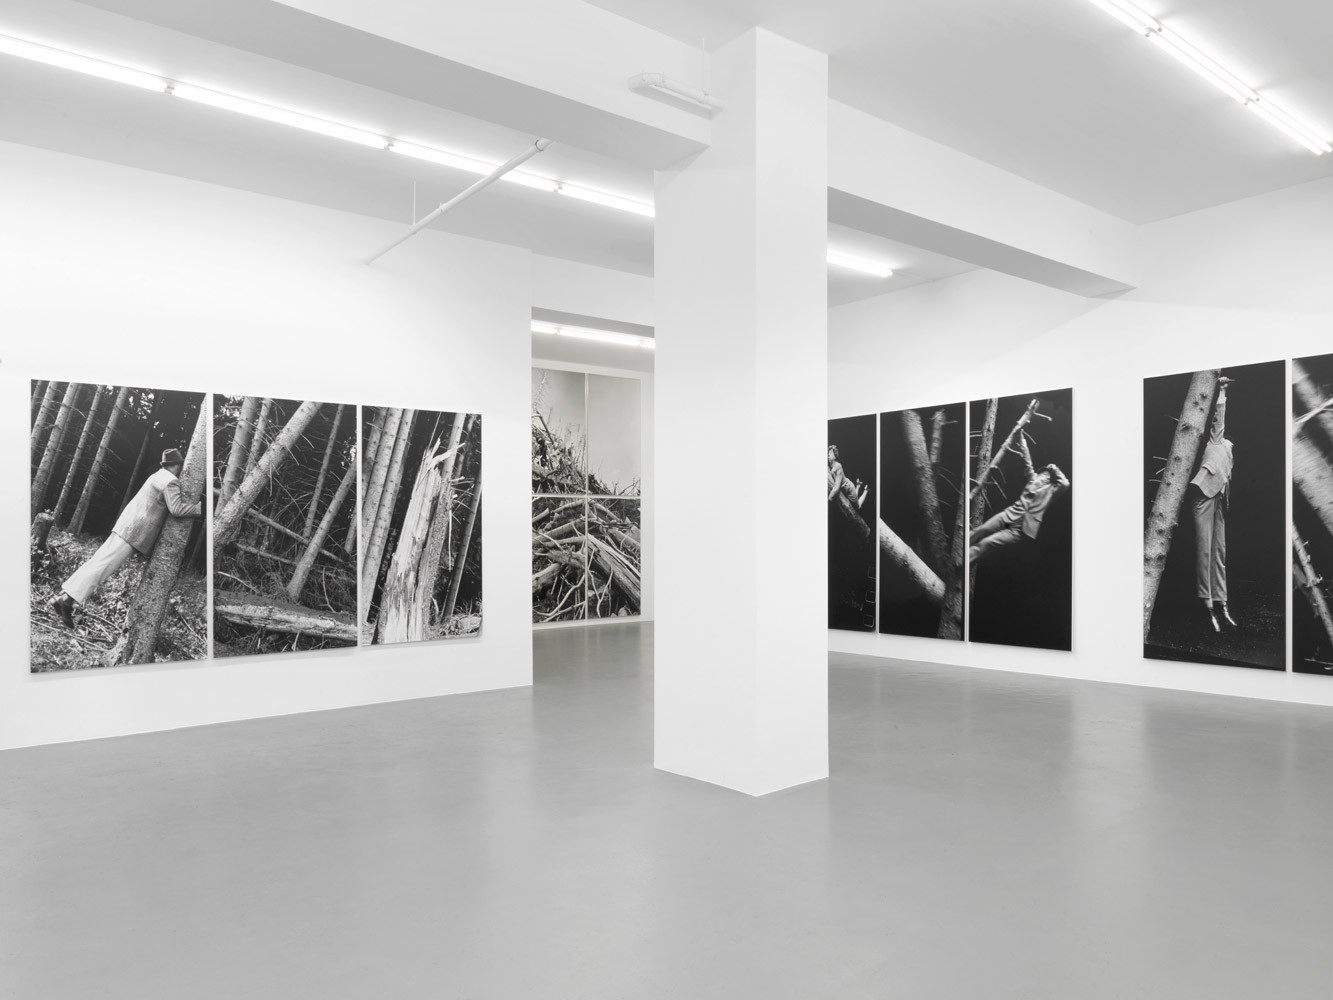 Anna & Bernhard Blume, ‘Im Wald’, Installation view, Buchmann Galerie, 2014